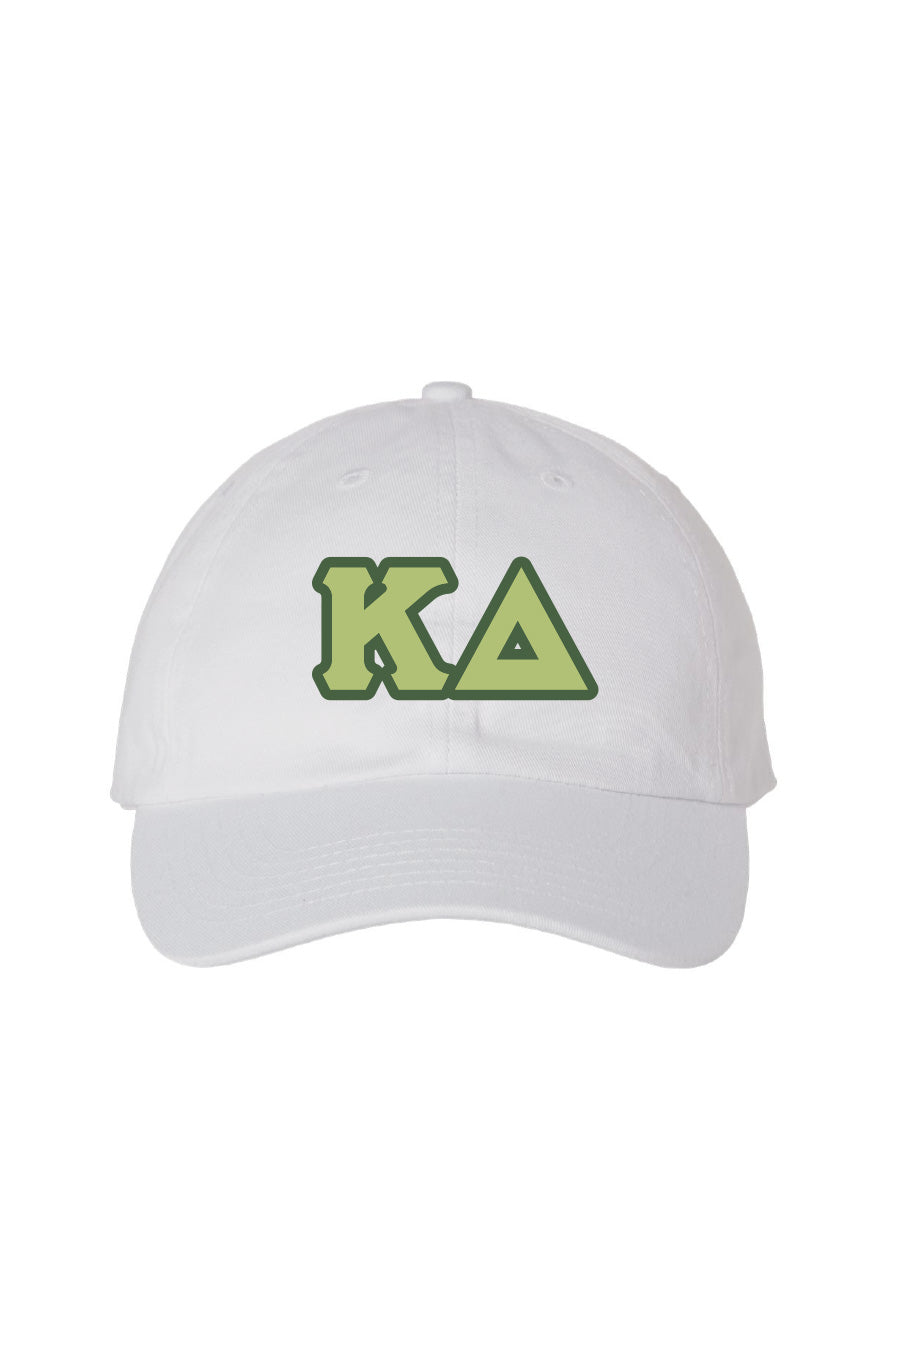 KD Letter Patch Hat